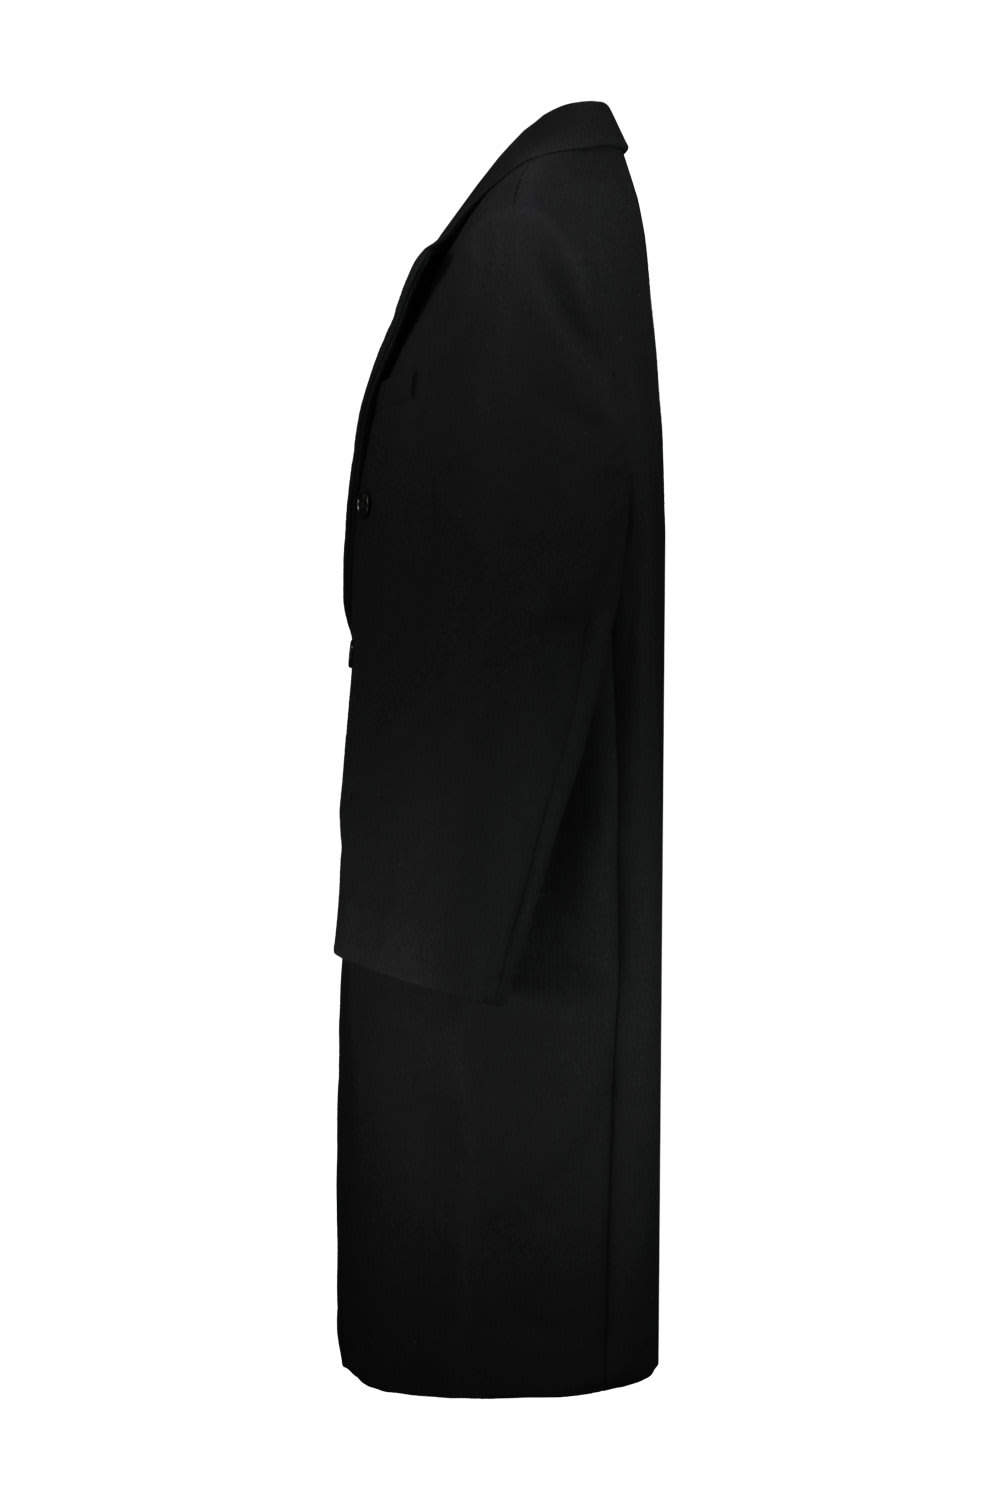 Shop Wardrobe.nyc Hailey Bieber Coat In Blk Black